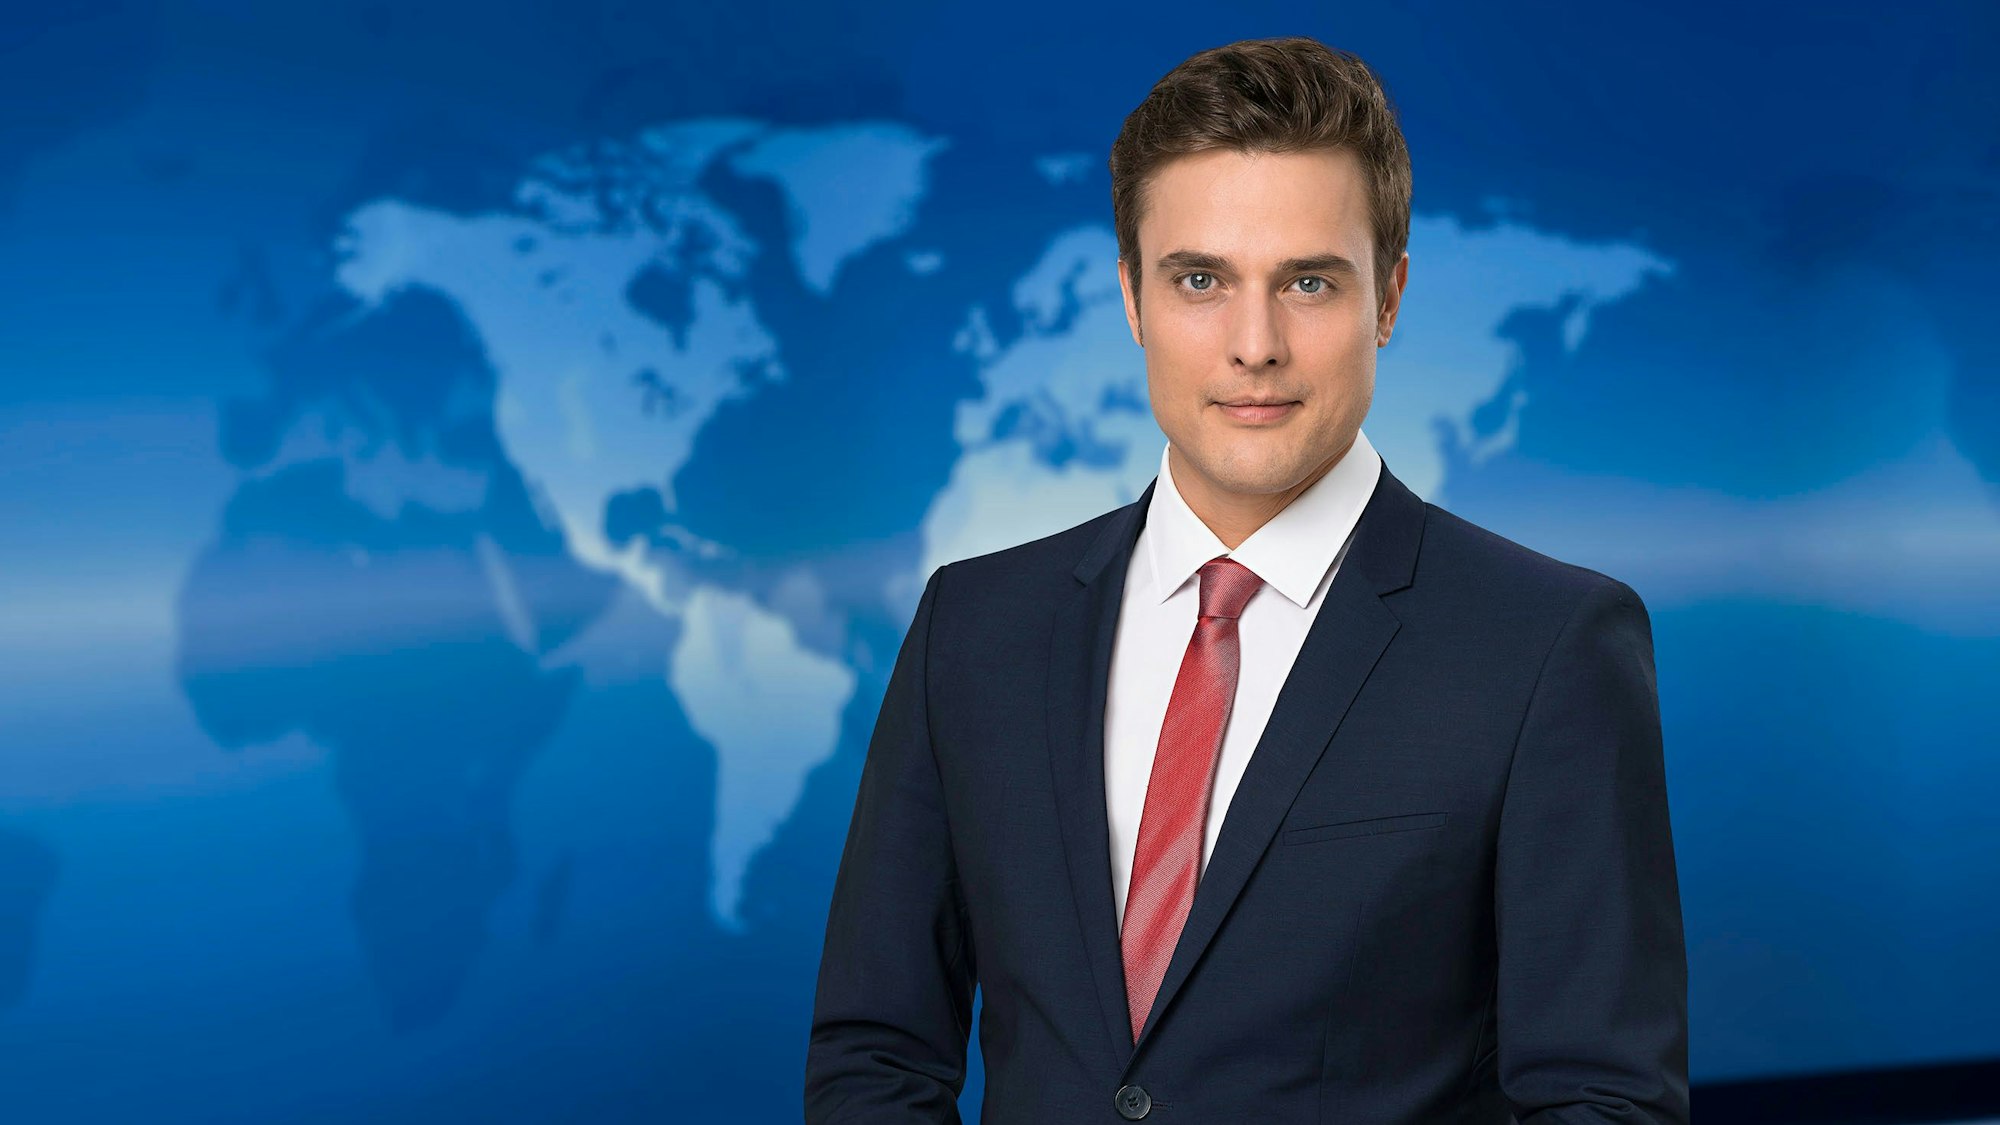 Constantin Schreiber moderierte die ARD-„Tagesschau“ am 8. Februar 2022 anders als gewöhnlich.